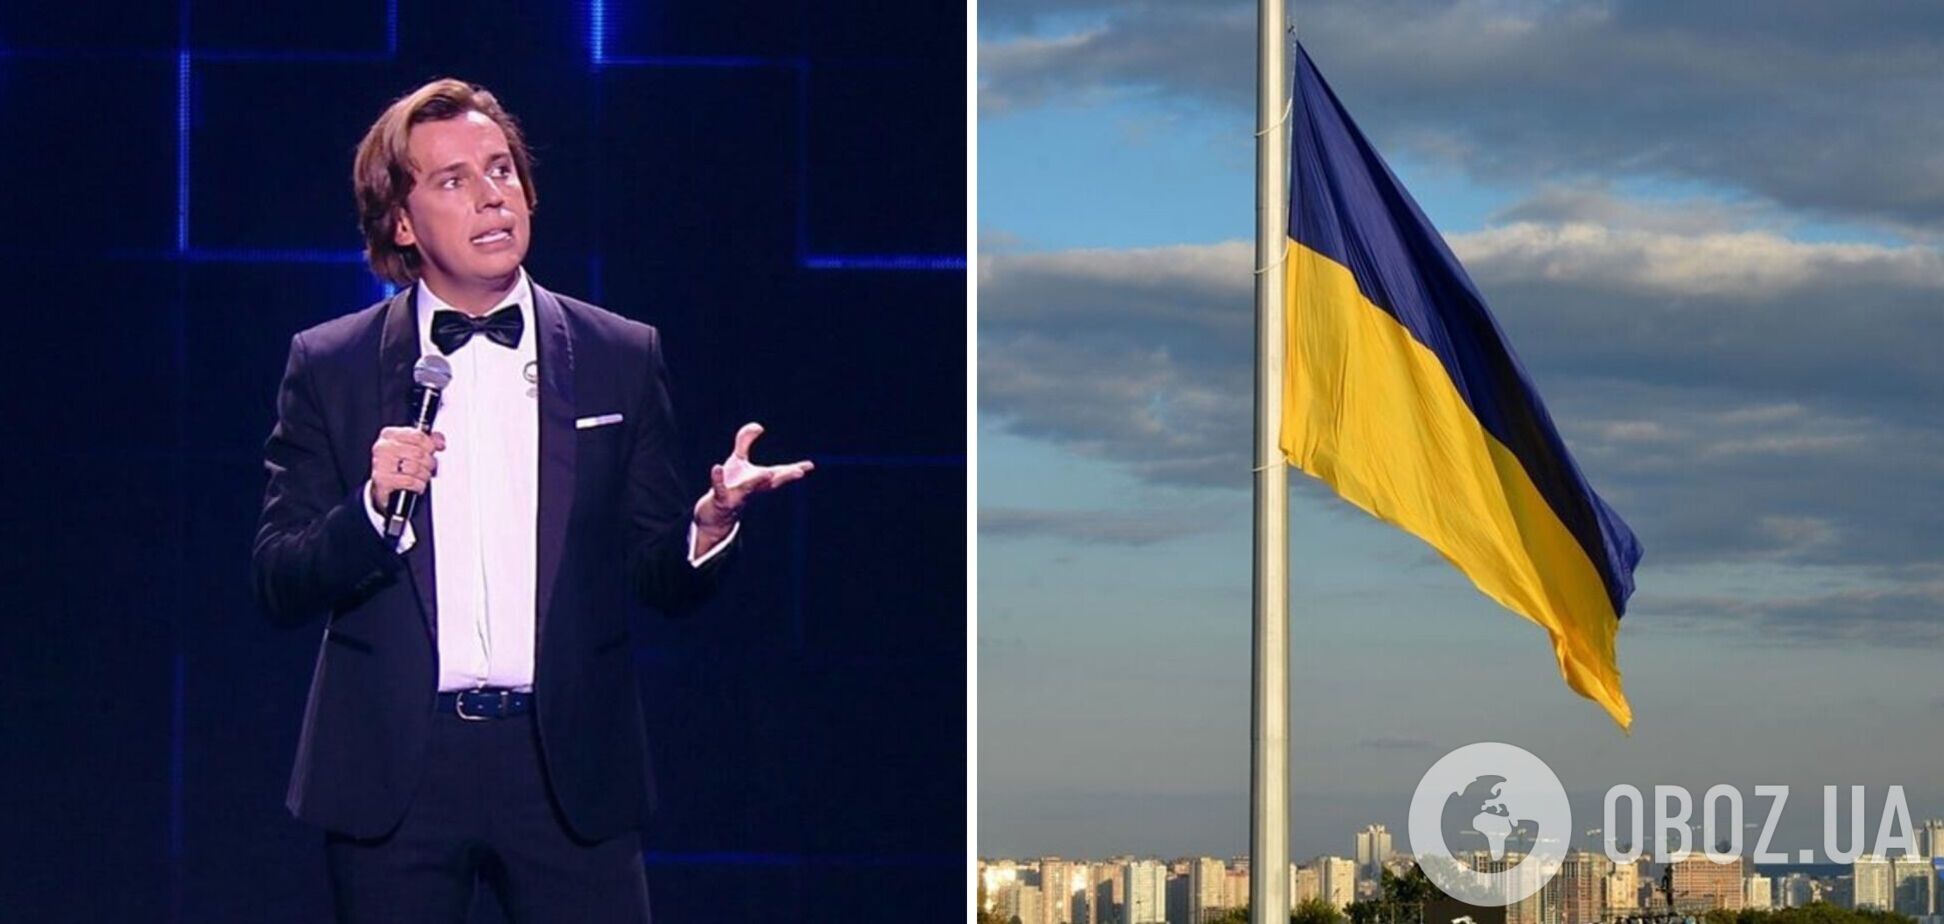 'Від серця хочу, щоб Україна була незалежною, живою і цілою': Галкін пояснив, як обрання Зеленського вплинуло на його життя в РФ 